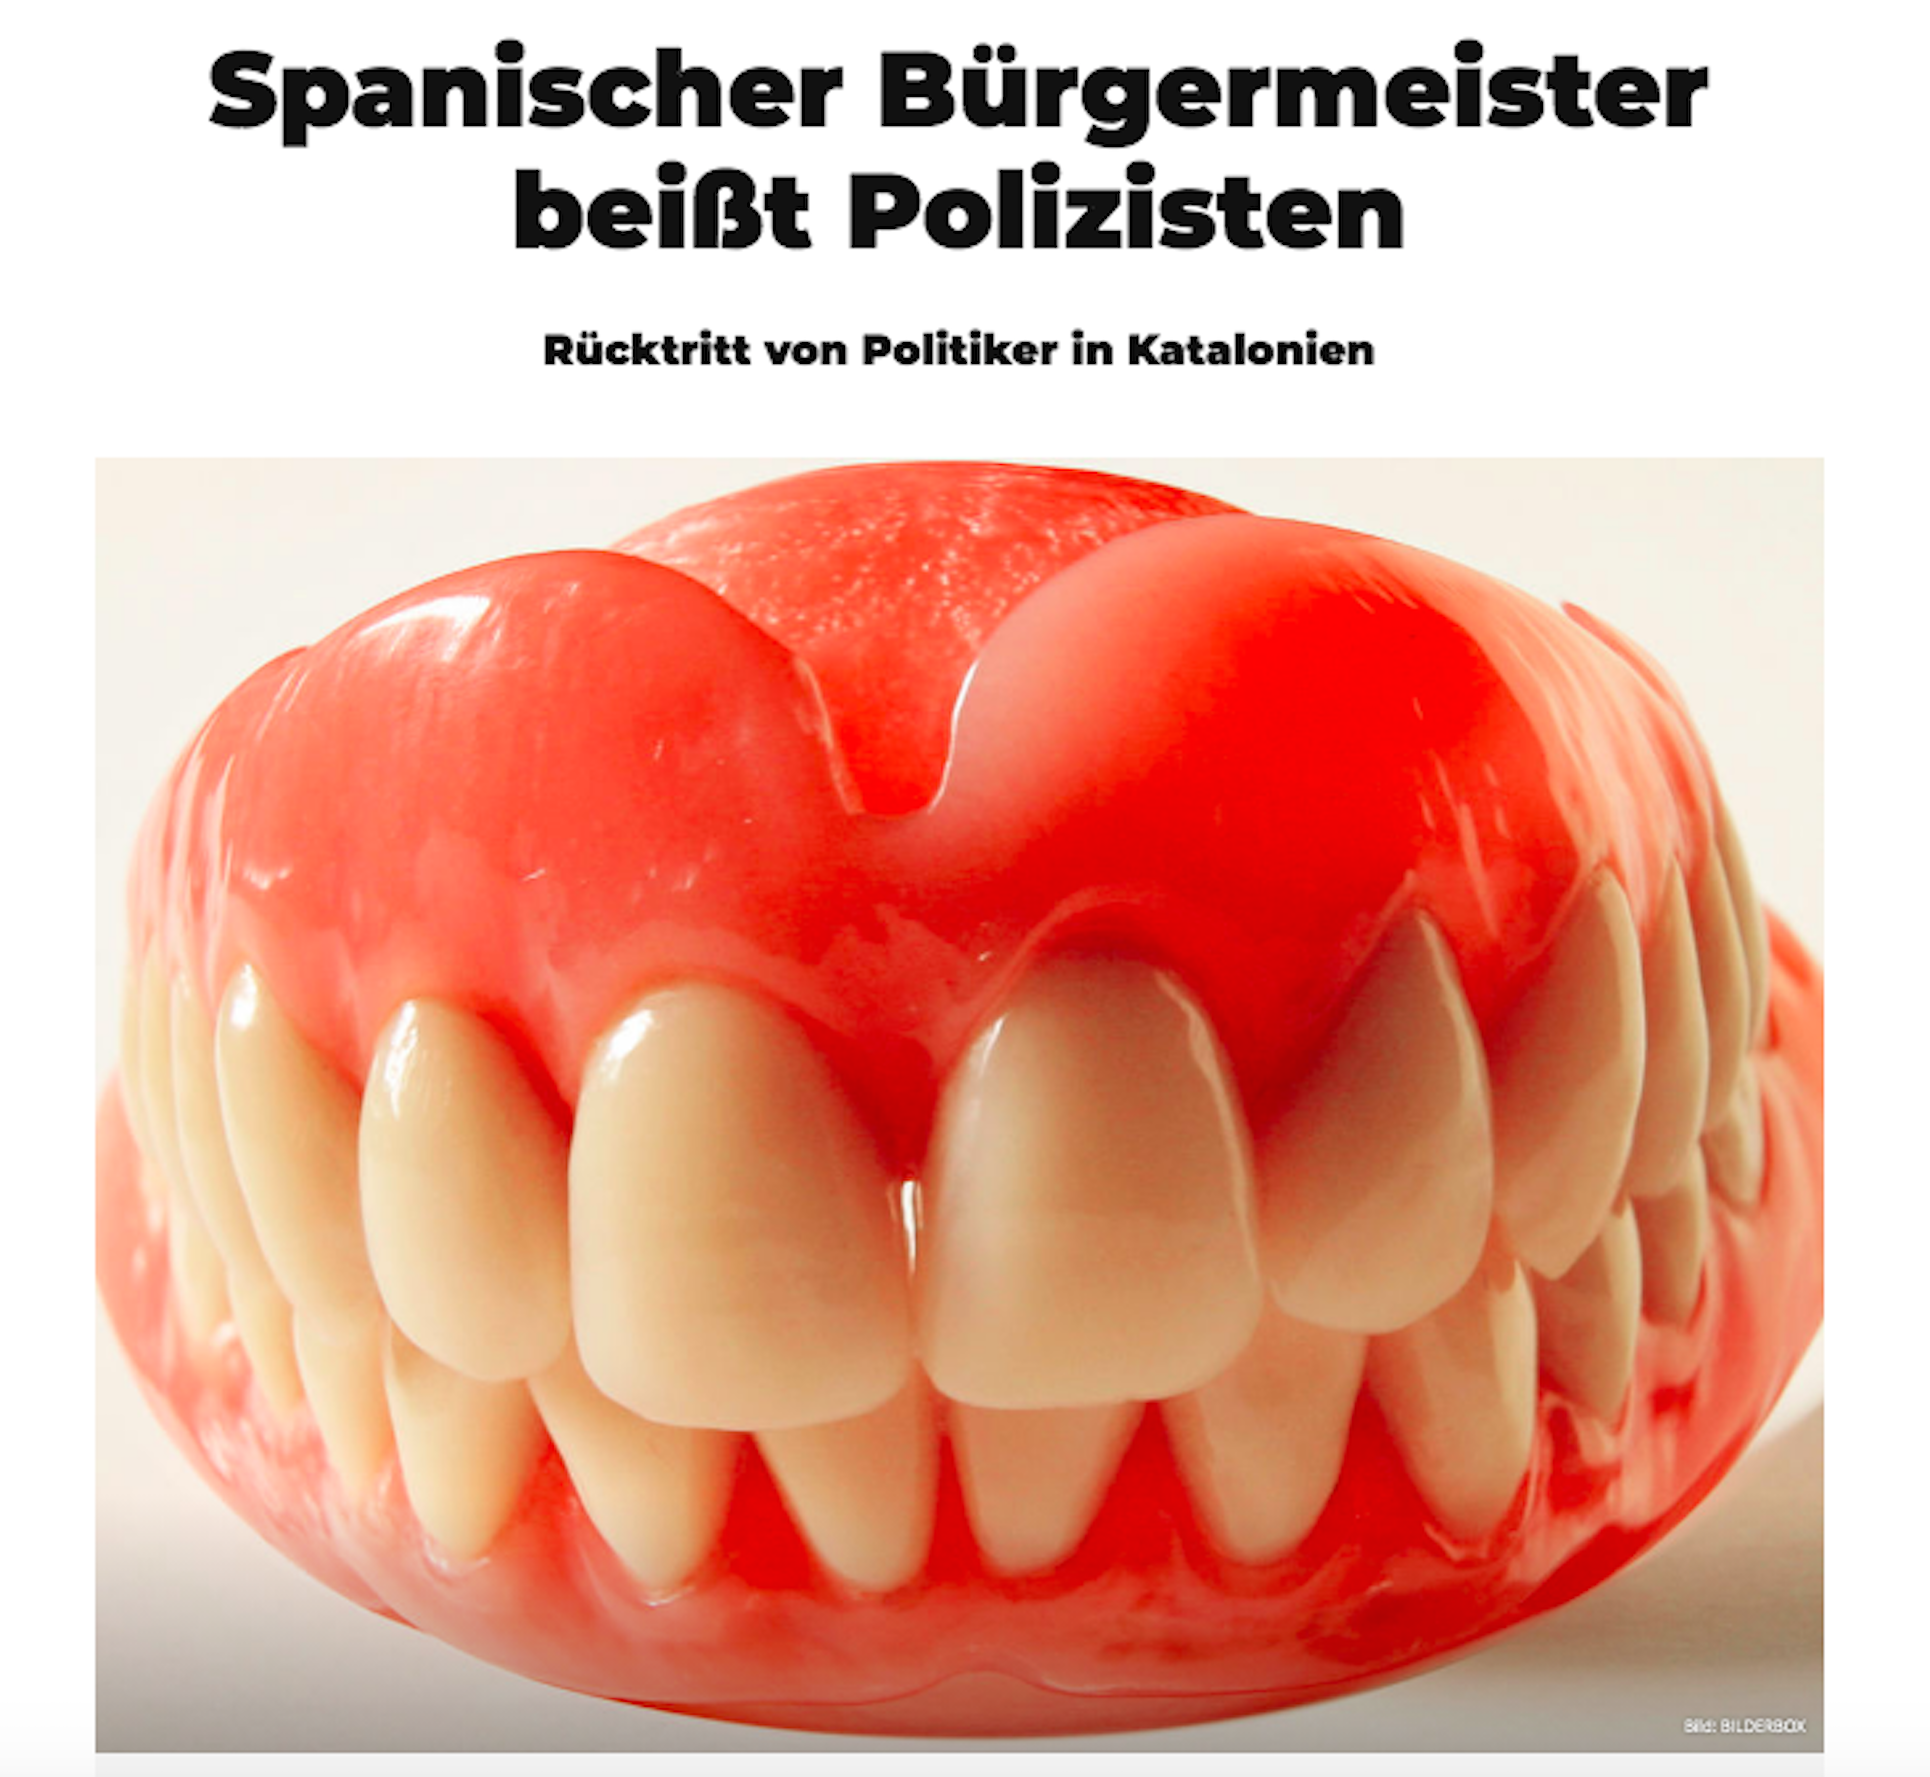 La mossegada de l'exalcalde de Badalona arriba a la premsa germànica